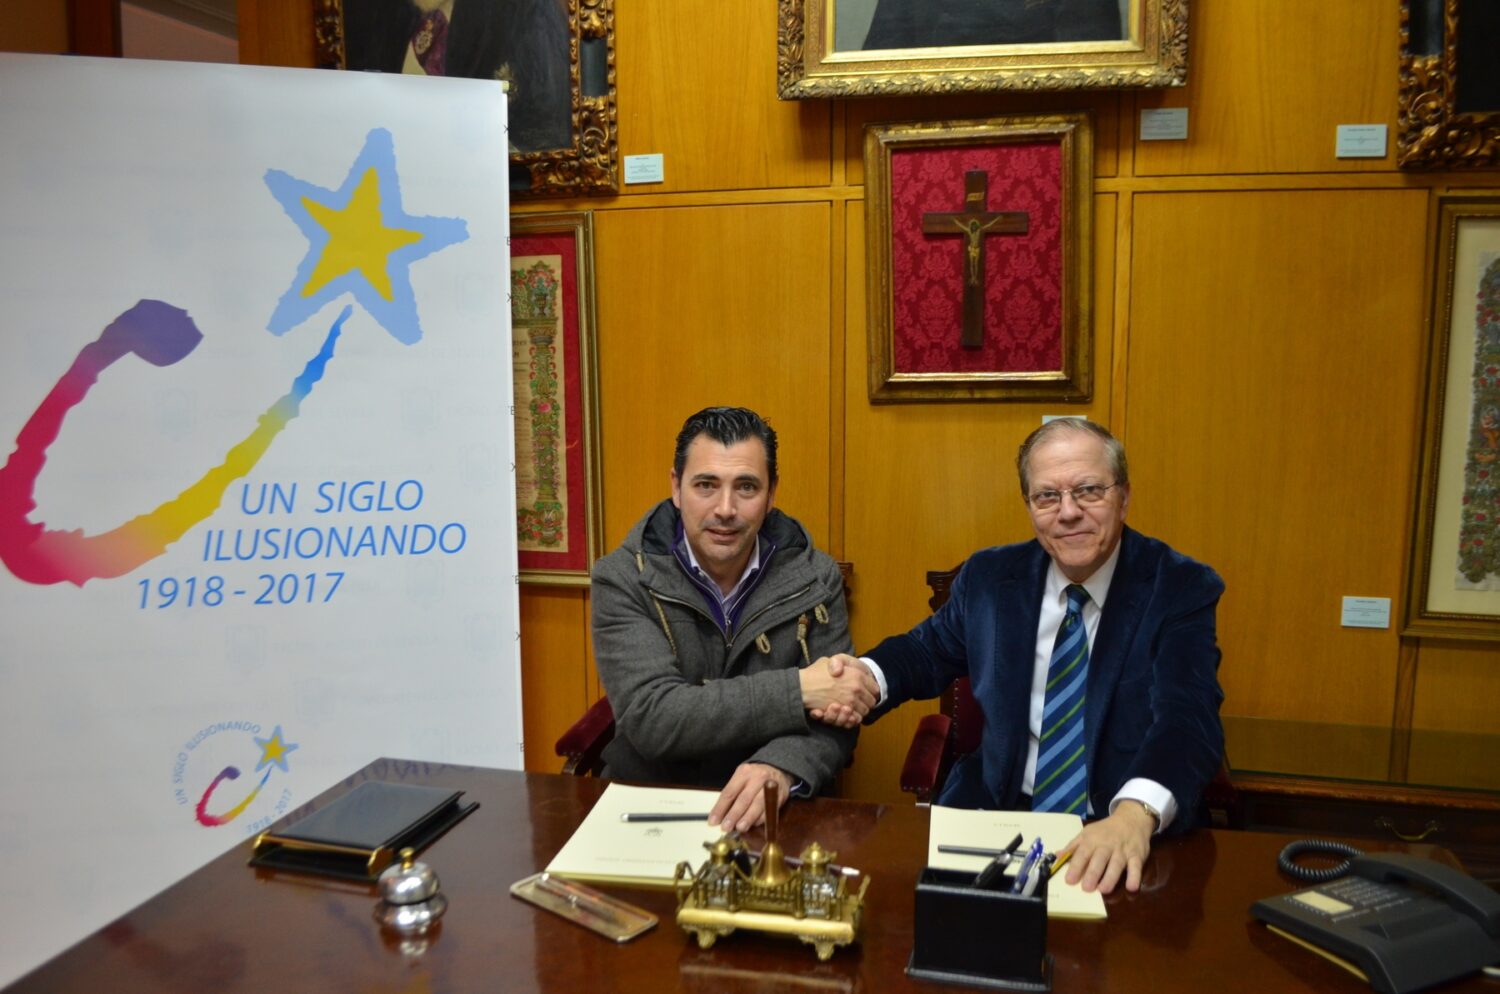 De izquierda a derecha, el director de la película Carlos Valera y el Presidente del Ateneo Alberto Máximo Pérez Calero tras la firma del convenio